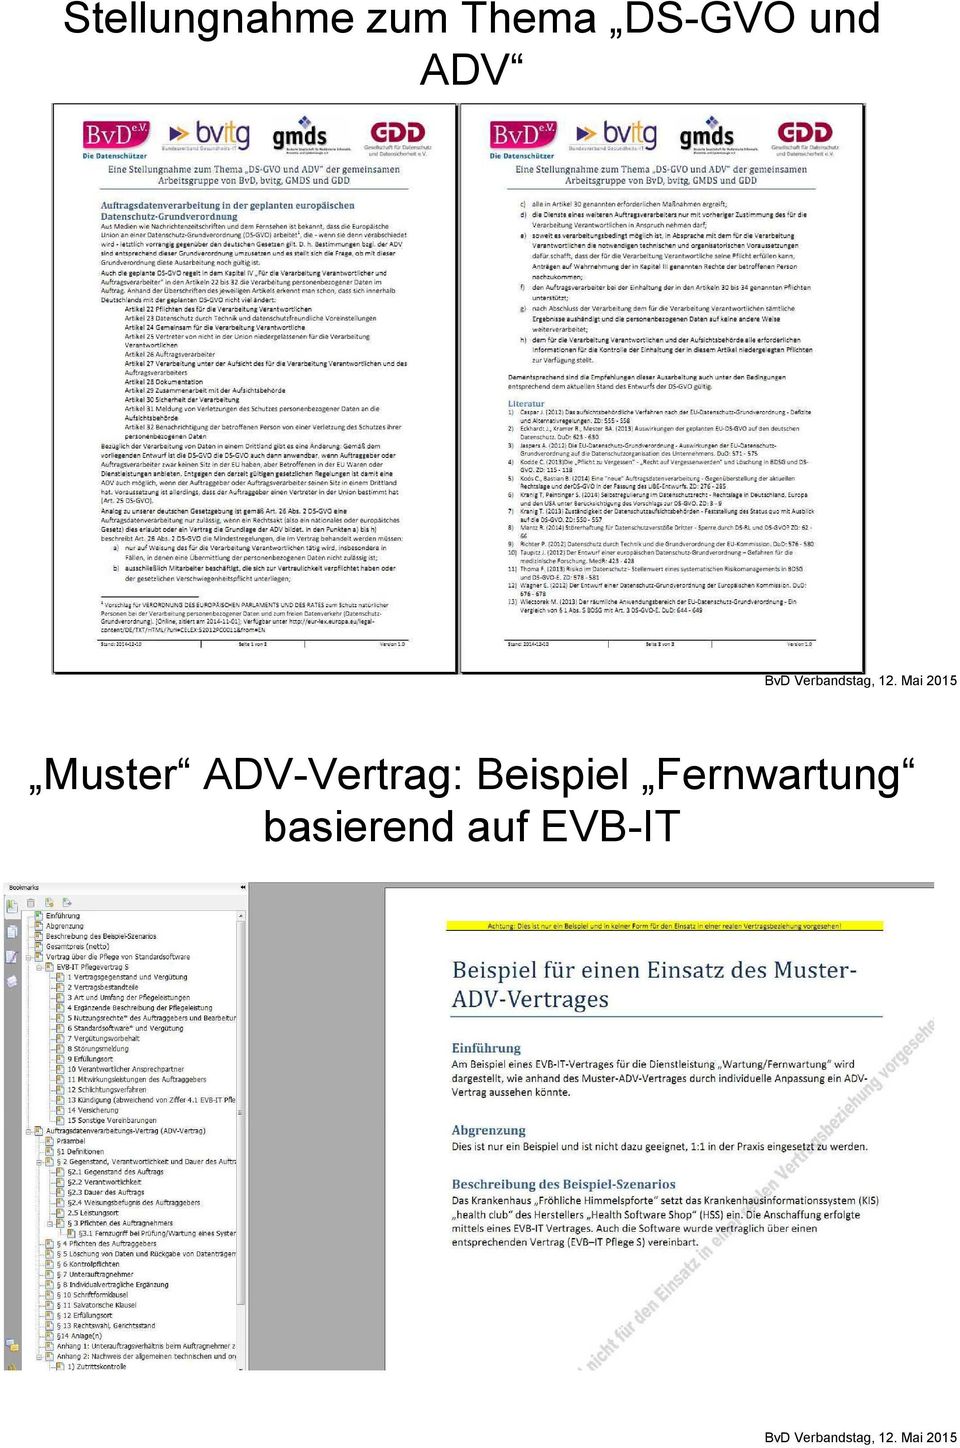 Muster Auftragsdatenverarbeitungsvertrag Eine Ag Von Bvitg Bvd Gdd